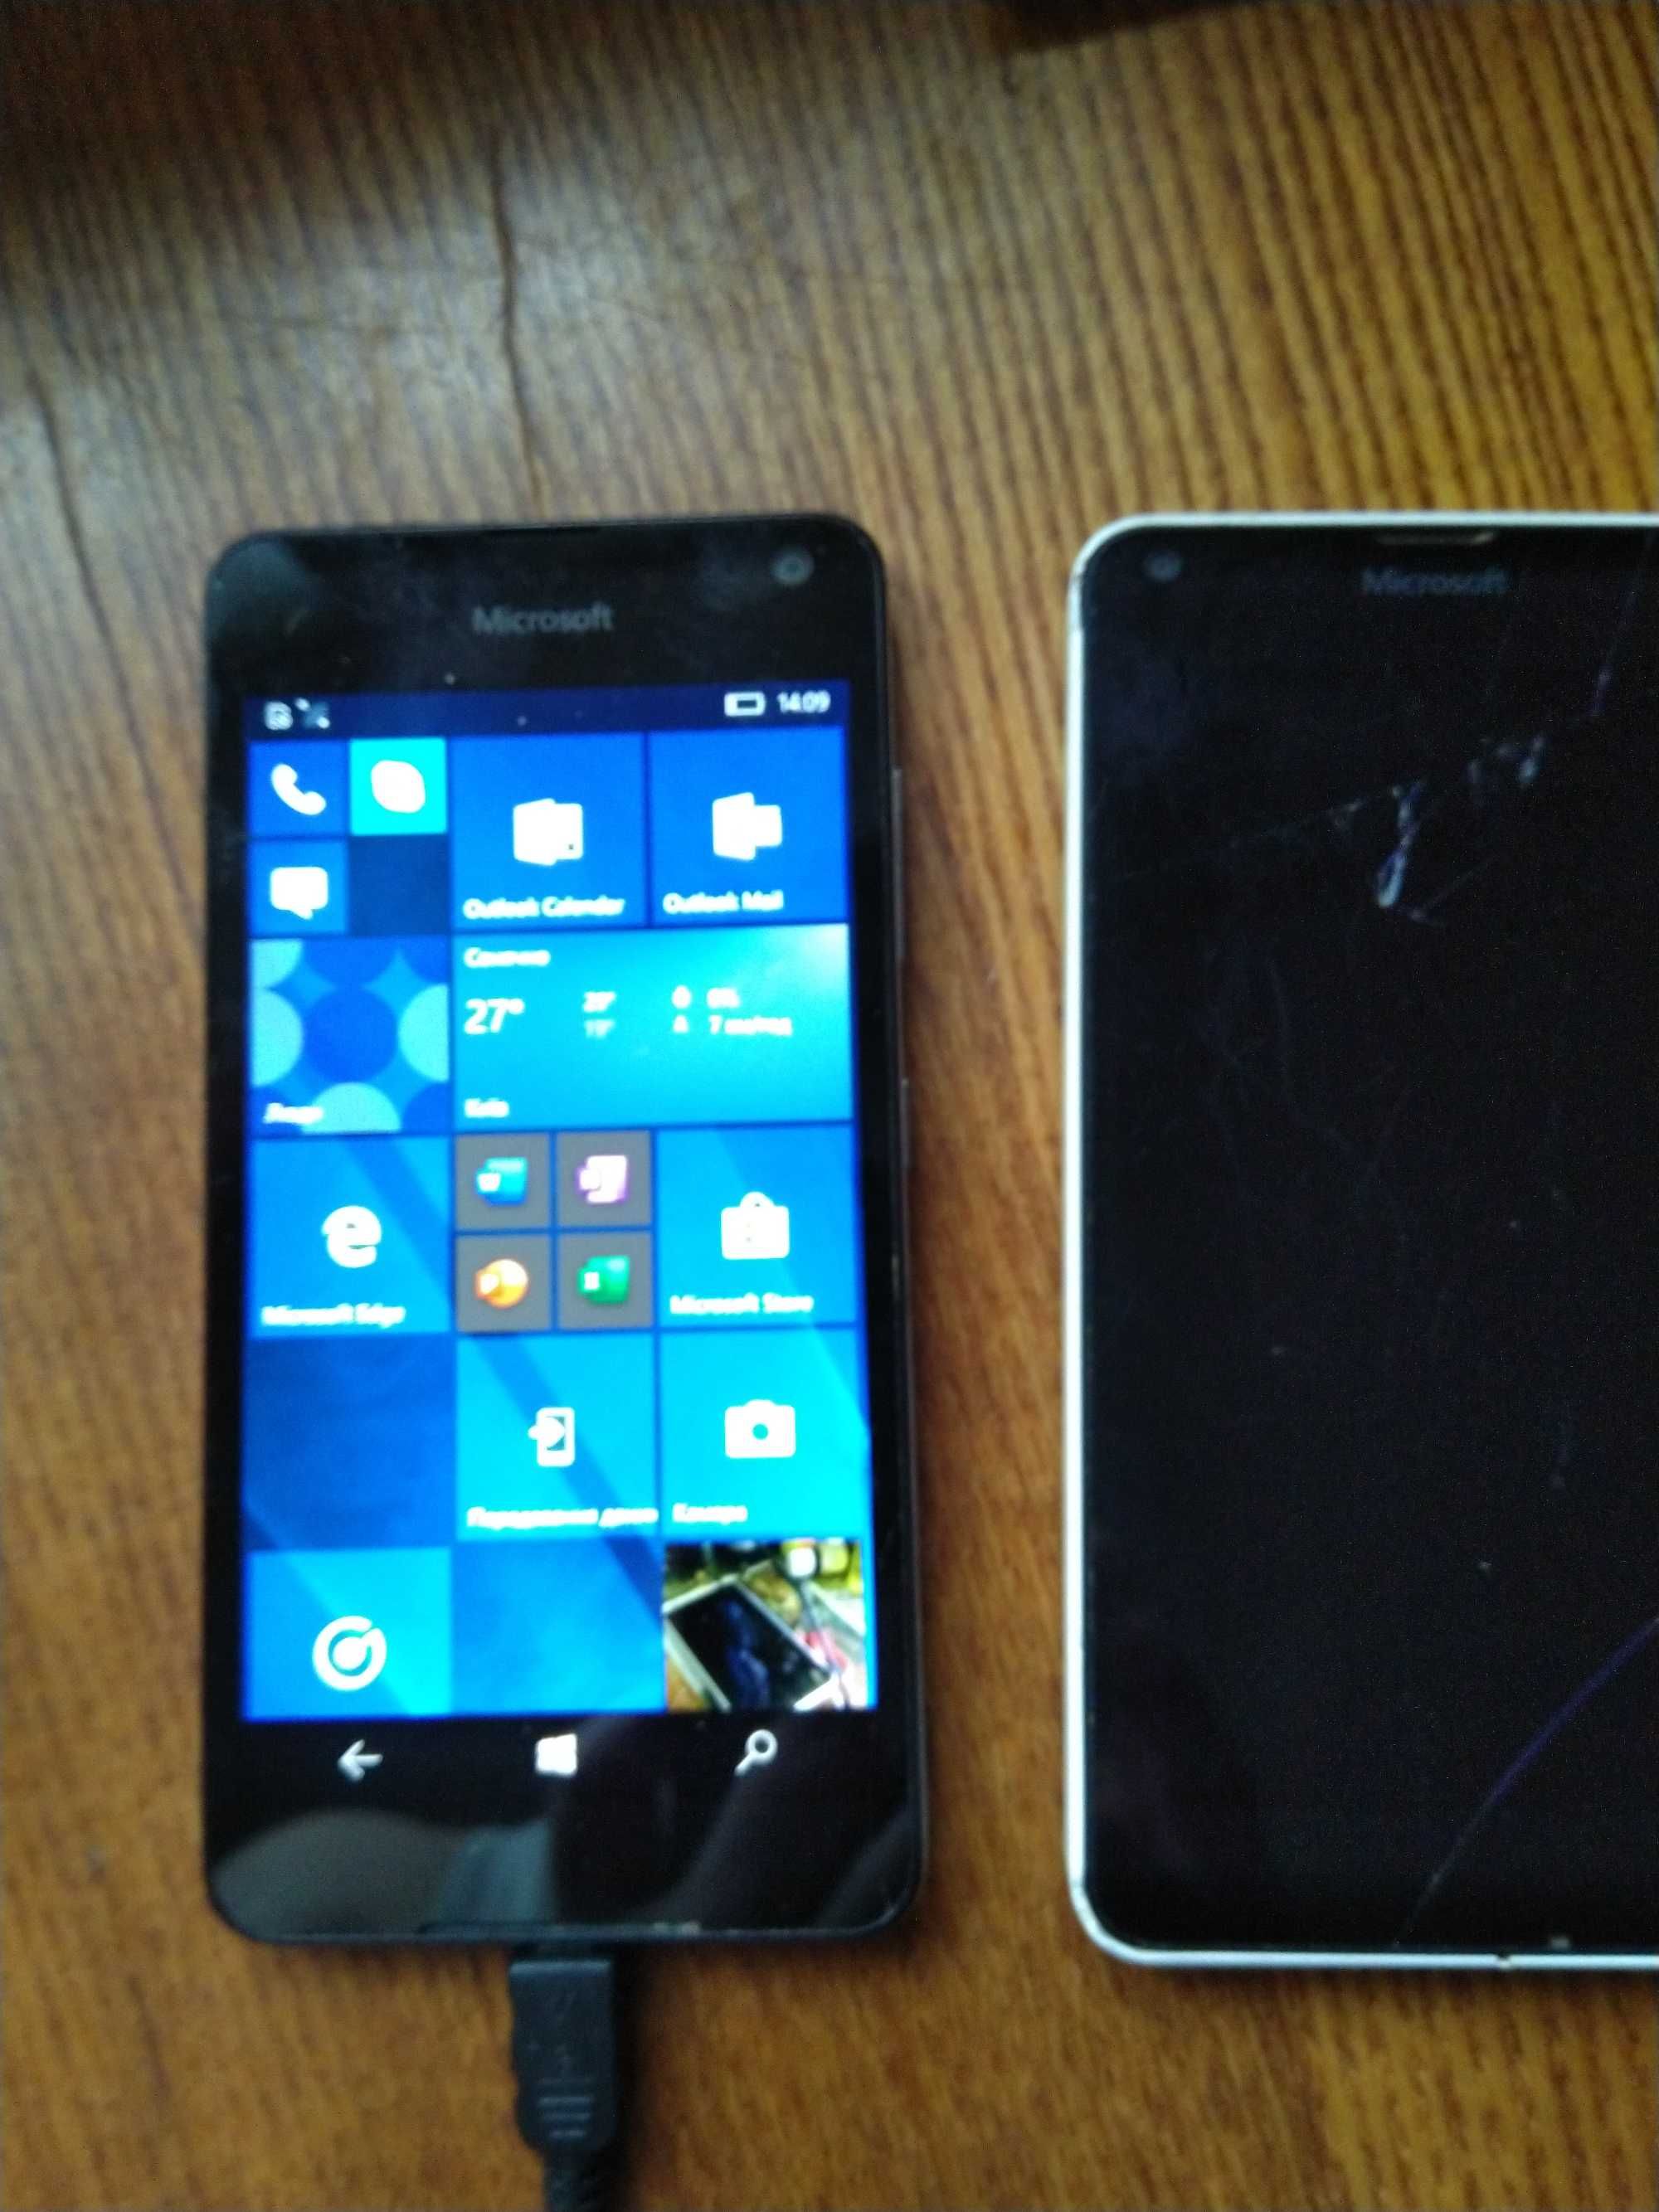 Nokia Lumia 650. Потребує заміни екрану